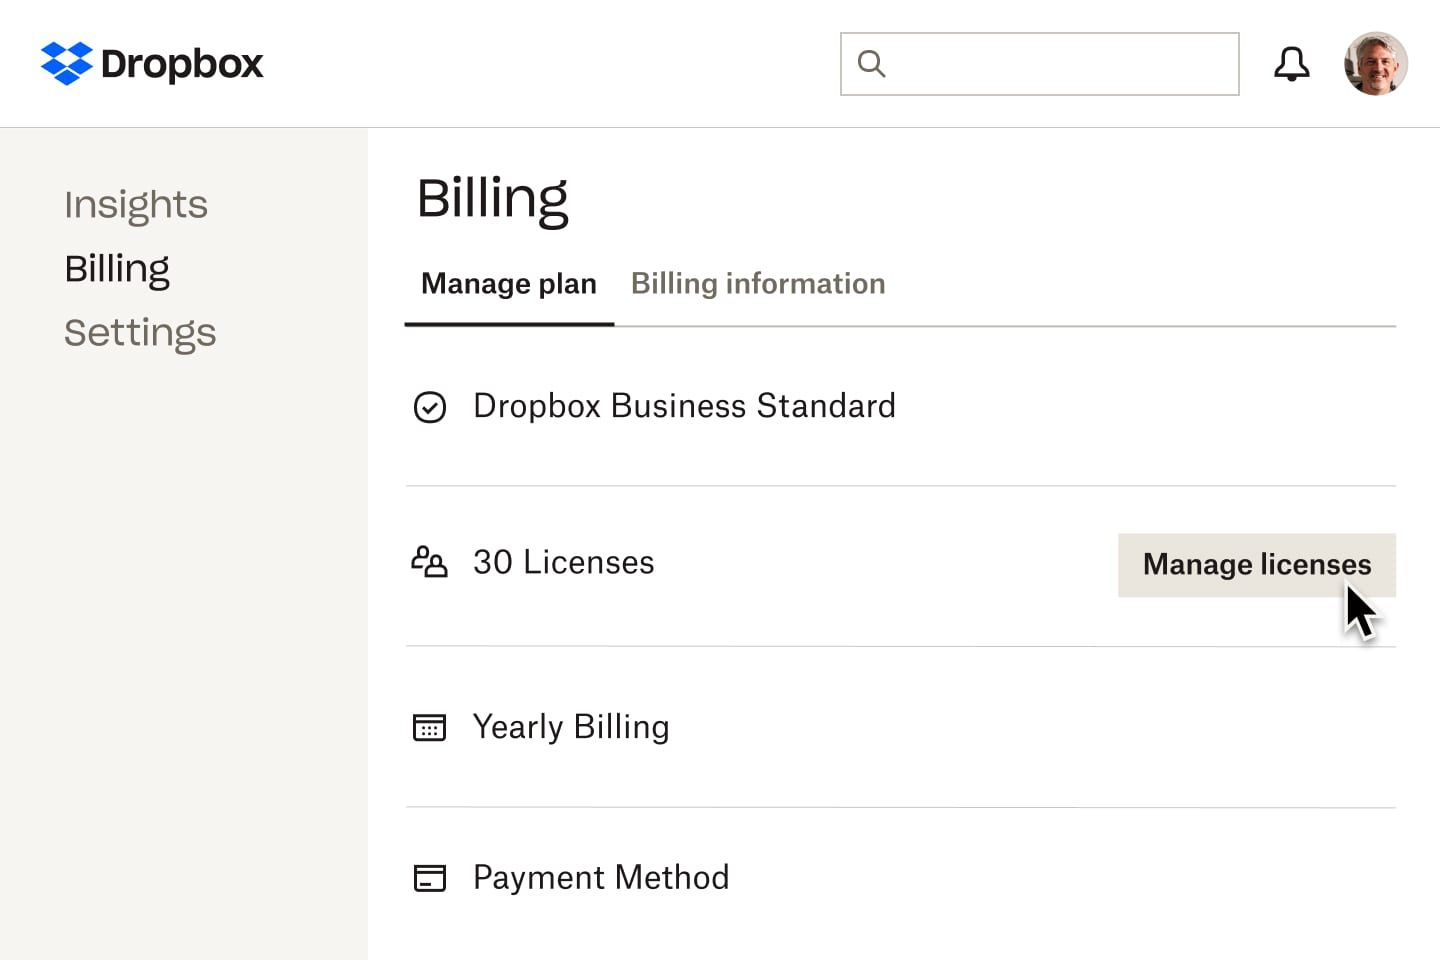 La vista de facturación en Dropbox que muestra el tipo de suscripción de un usuario, cuántas licencias están asociadas a la cuenta, el calendario de facturación y el método de pago